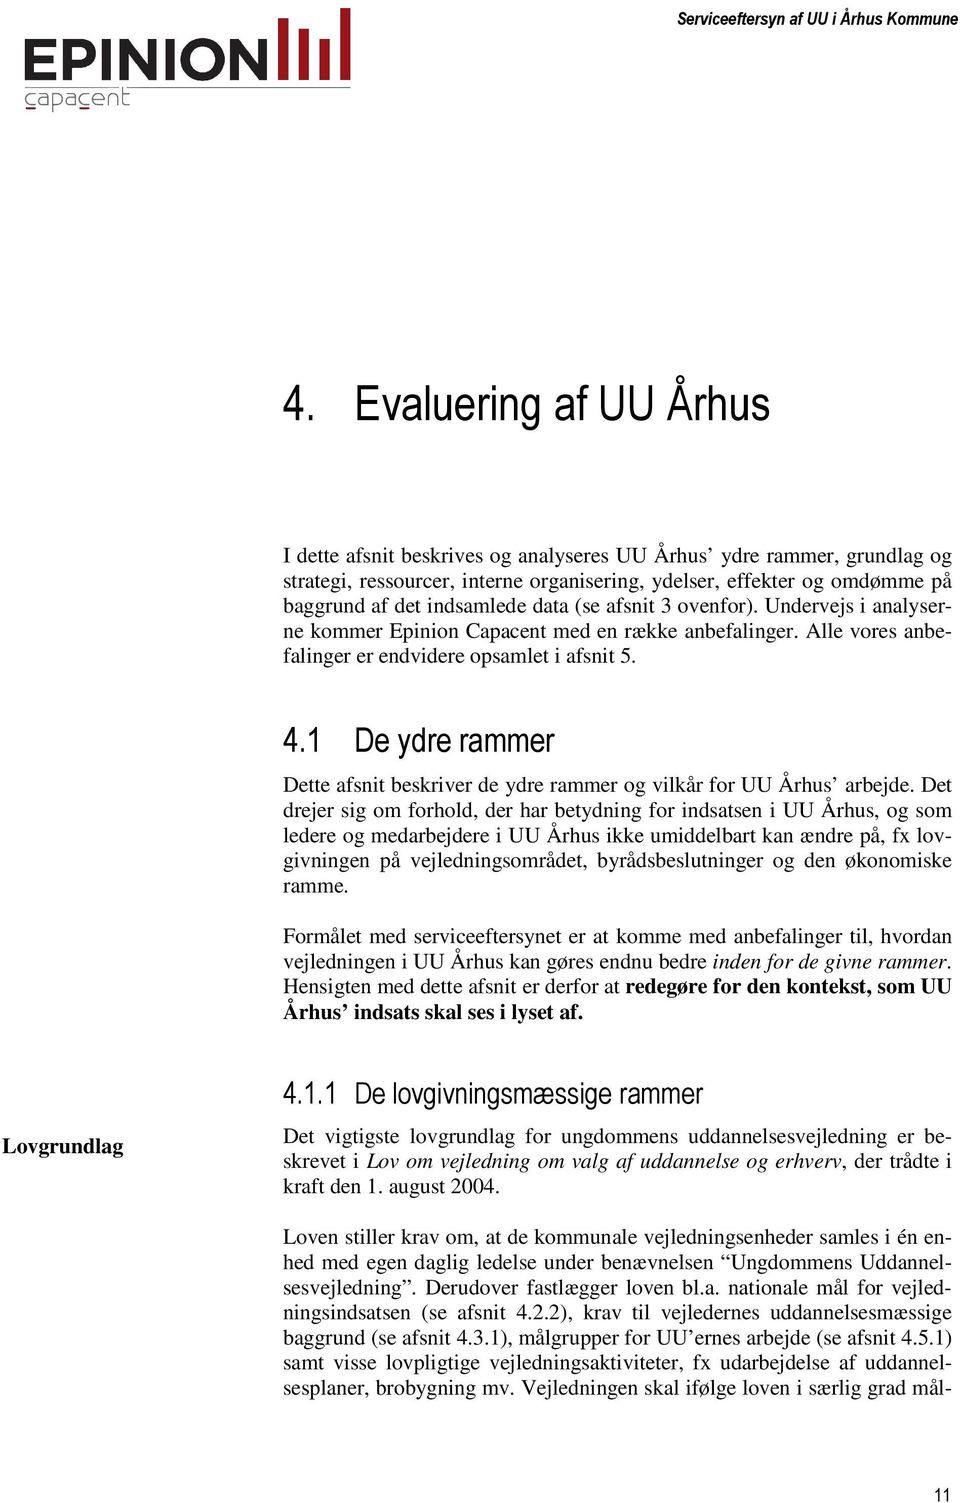 2# - Dette afsnit beskriver de ydre rammer og vilkår for UU Århus arbejde.